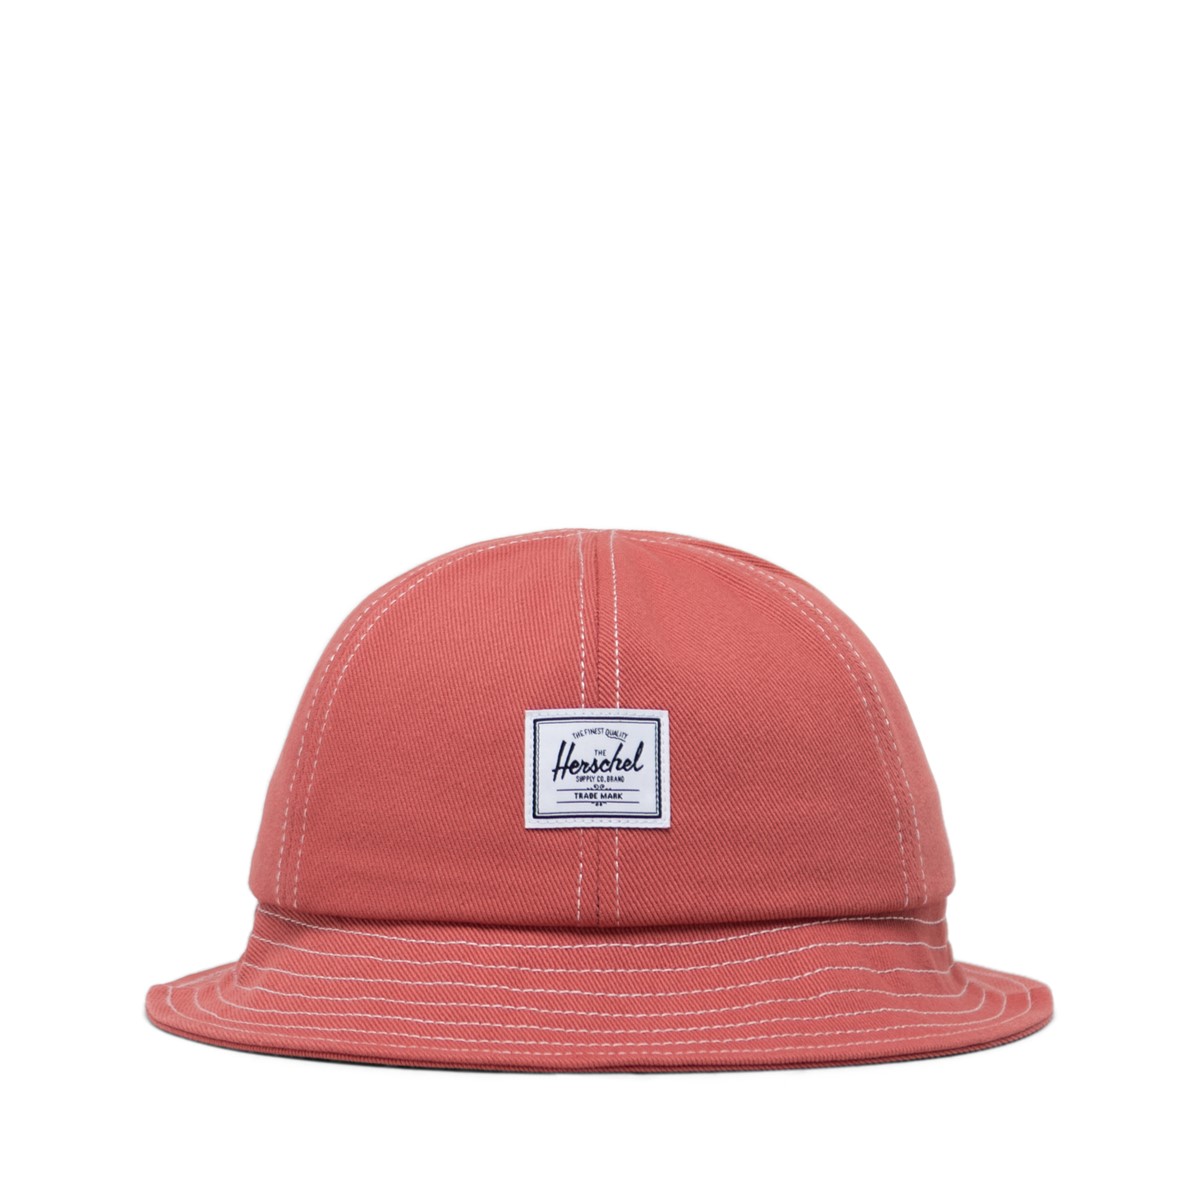 Henderson Bucket Hat in Dusty Pink